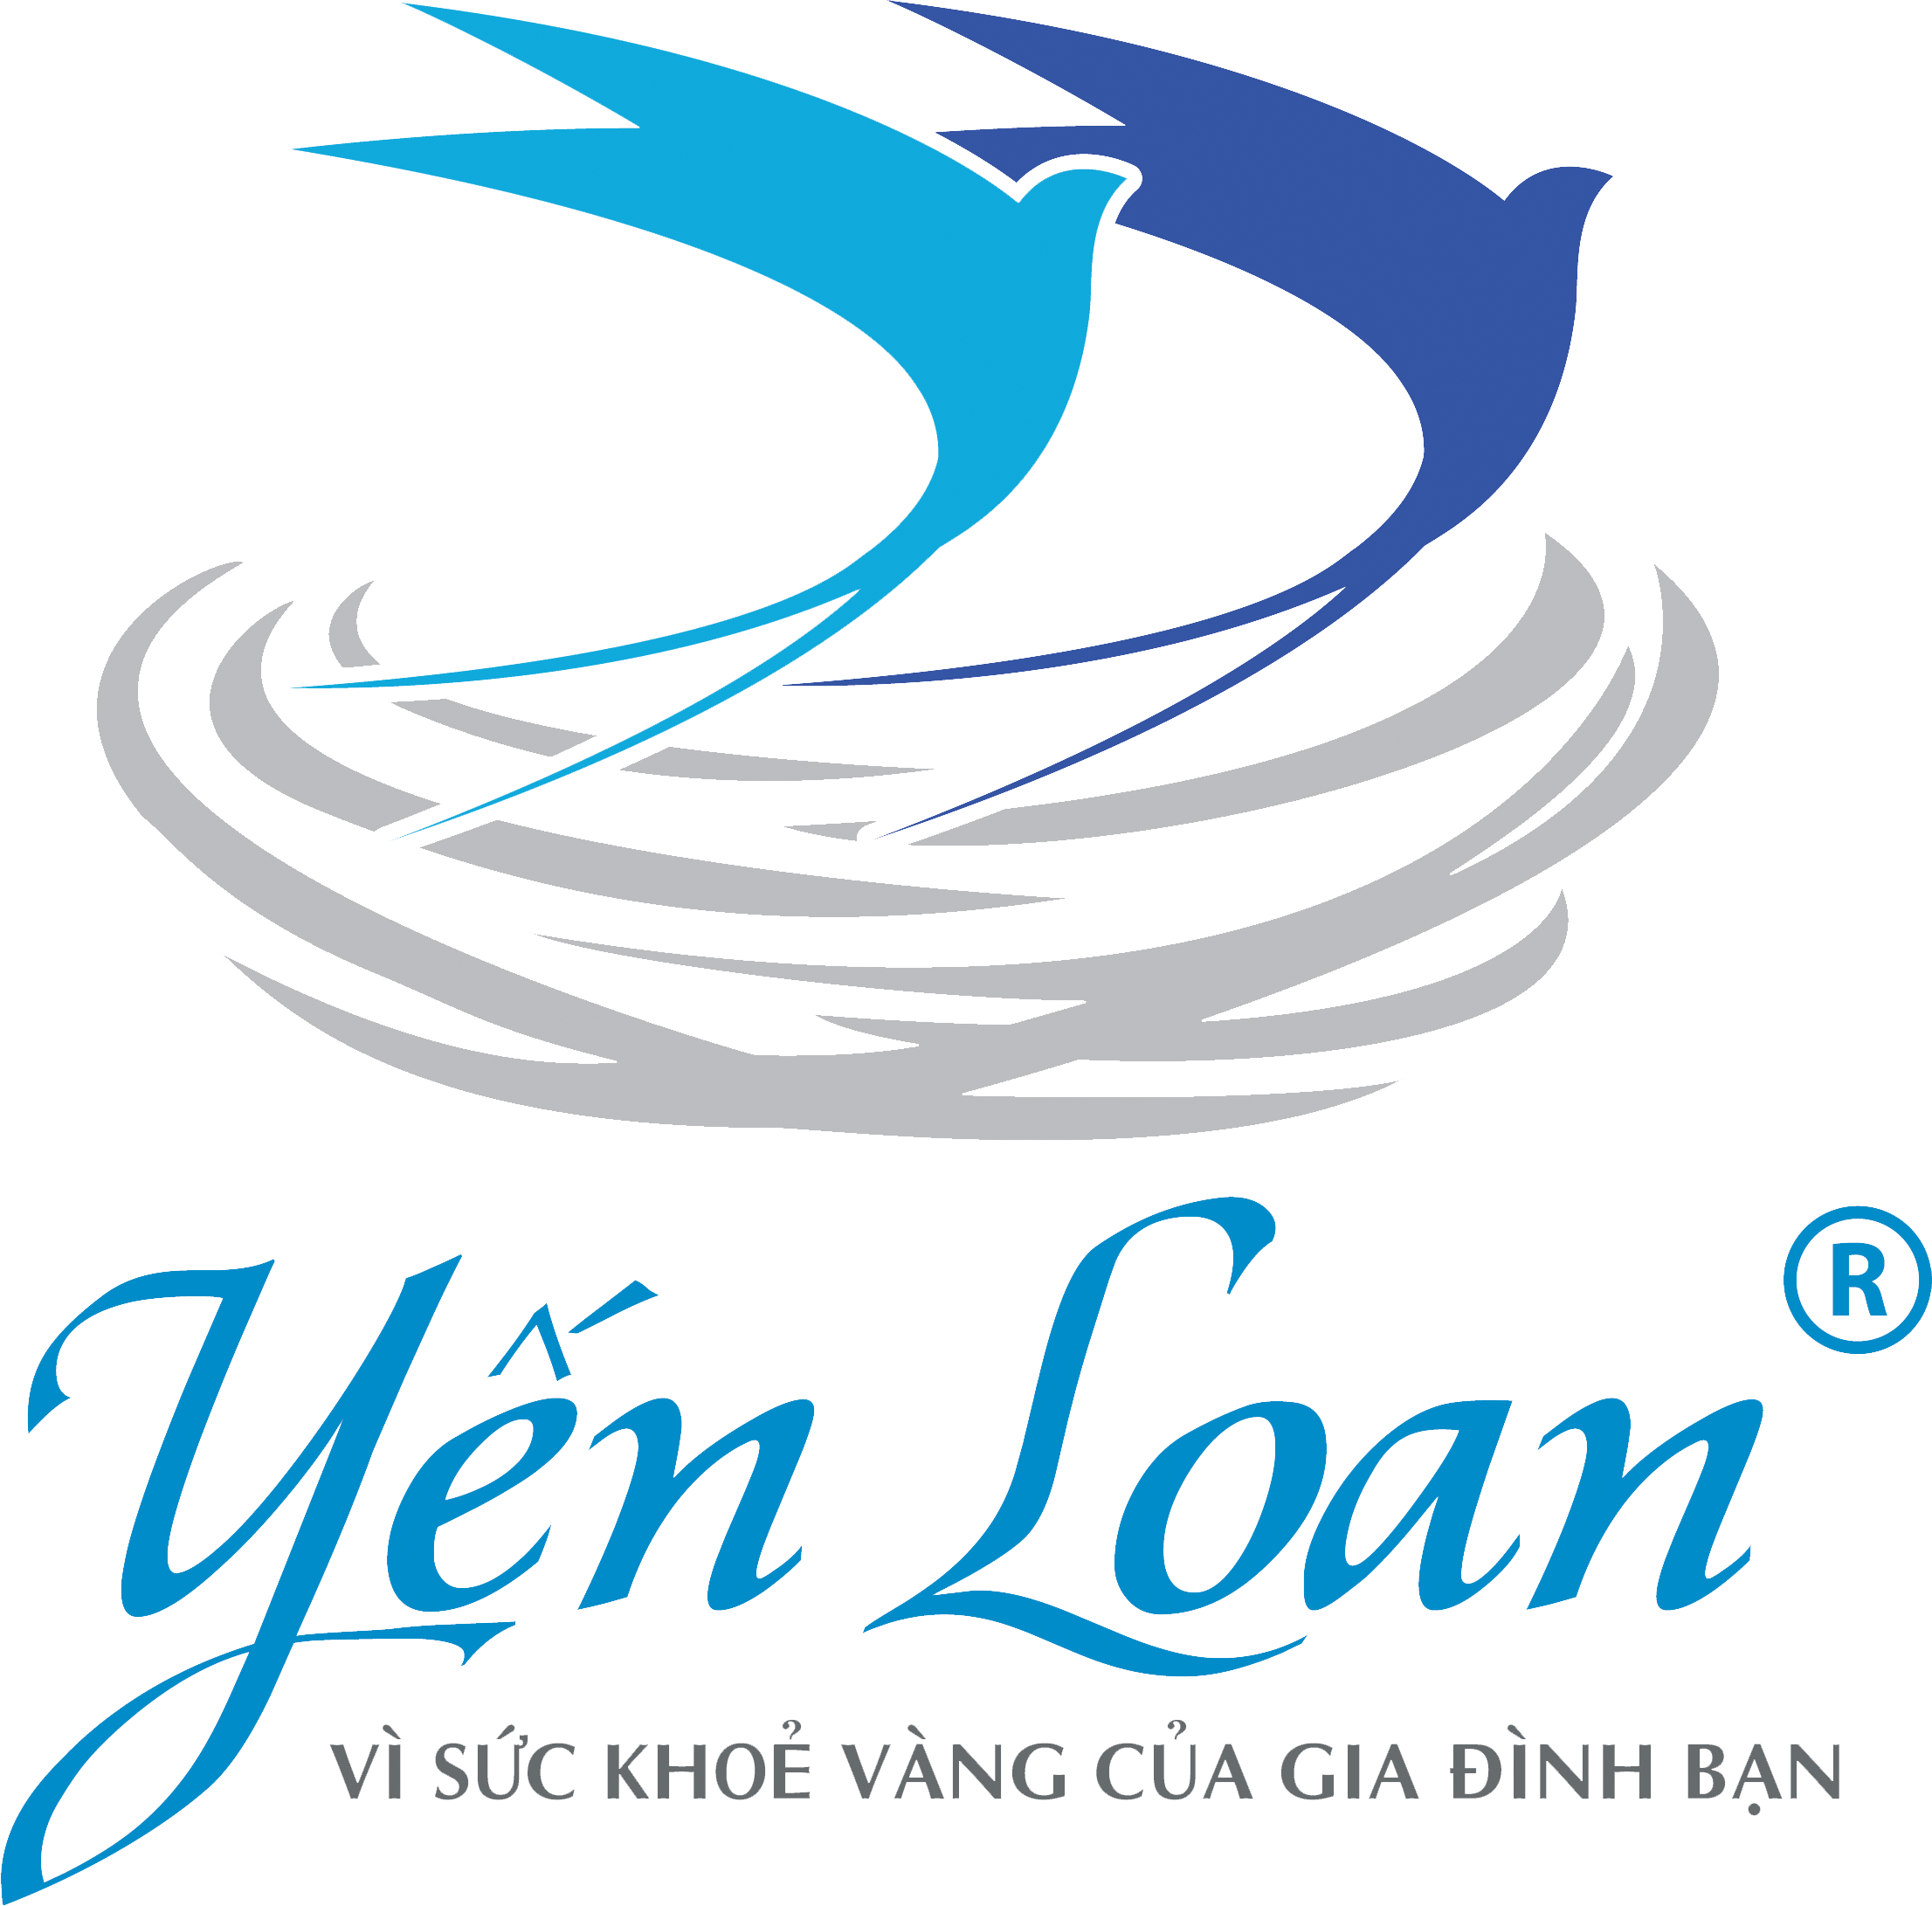 Yến Sào Yến Loan_ Tây Ninh